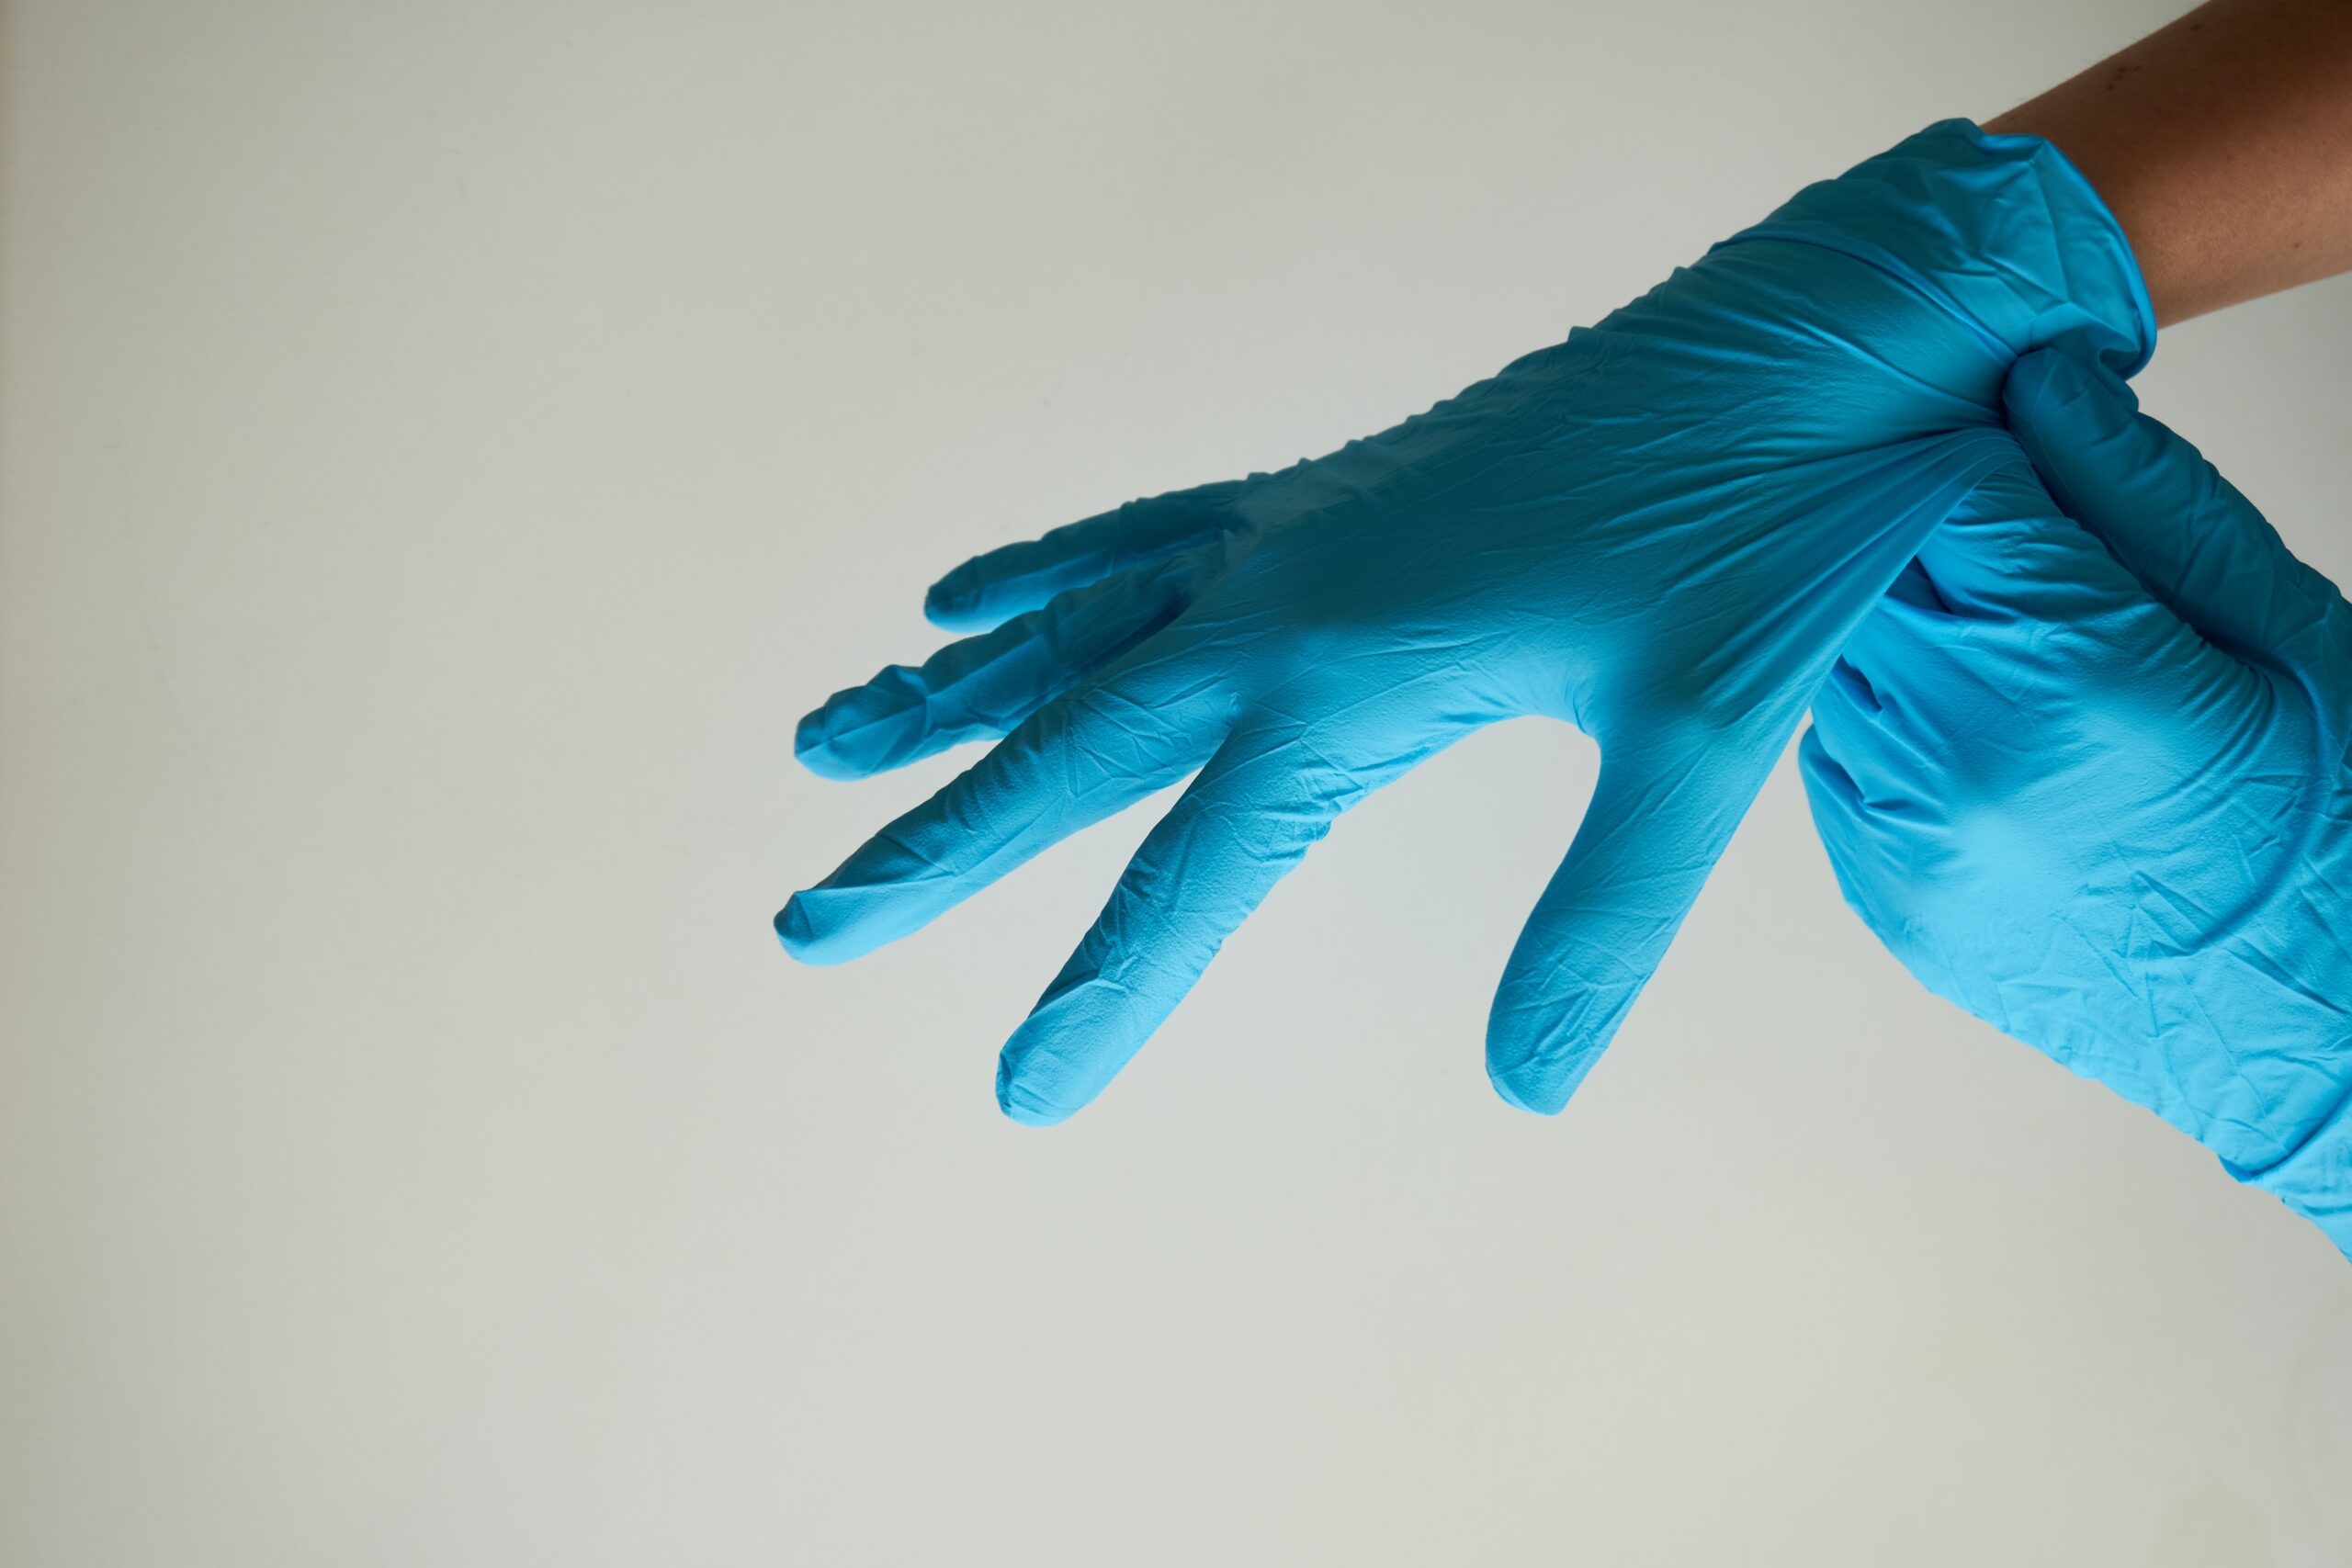 medical gloves on hands.